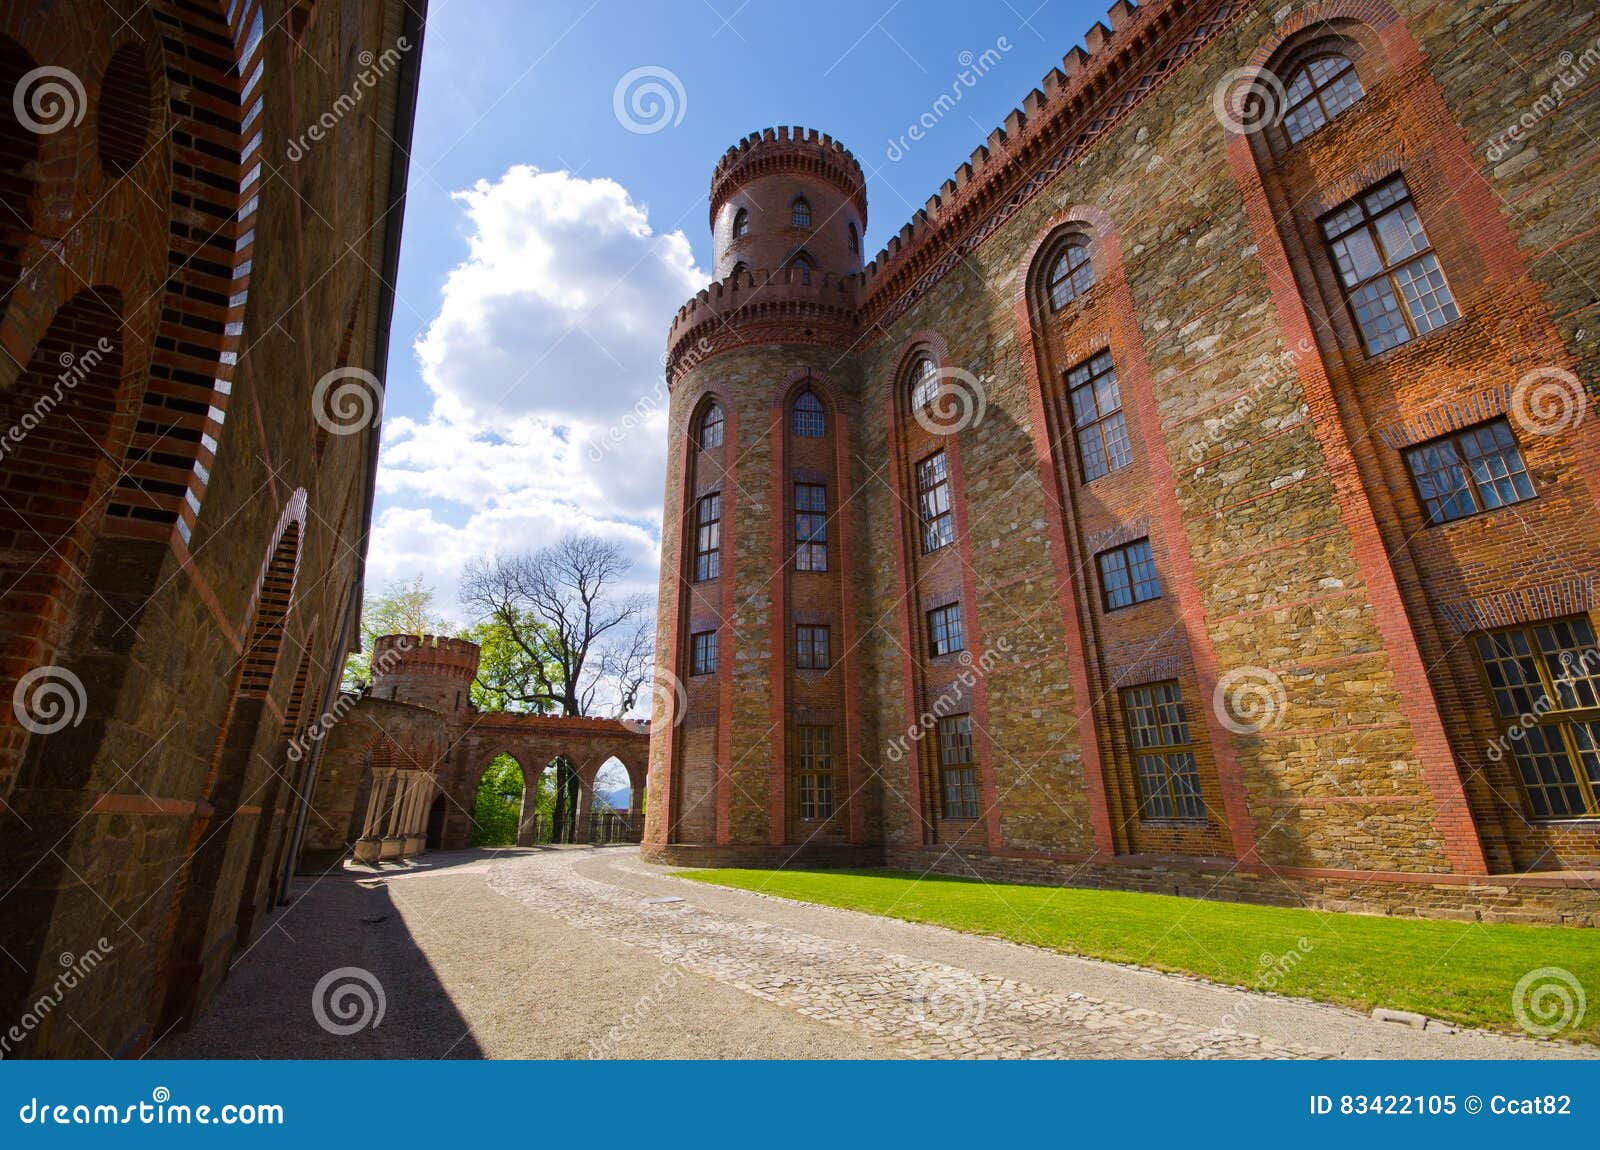 Palace in Kamieniec Zabkowicki, Poland Stock Image - Image of medieval ...